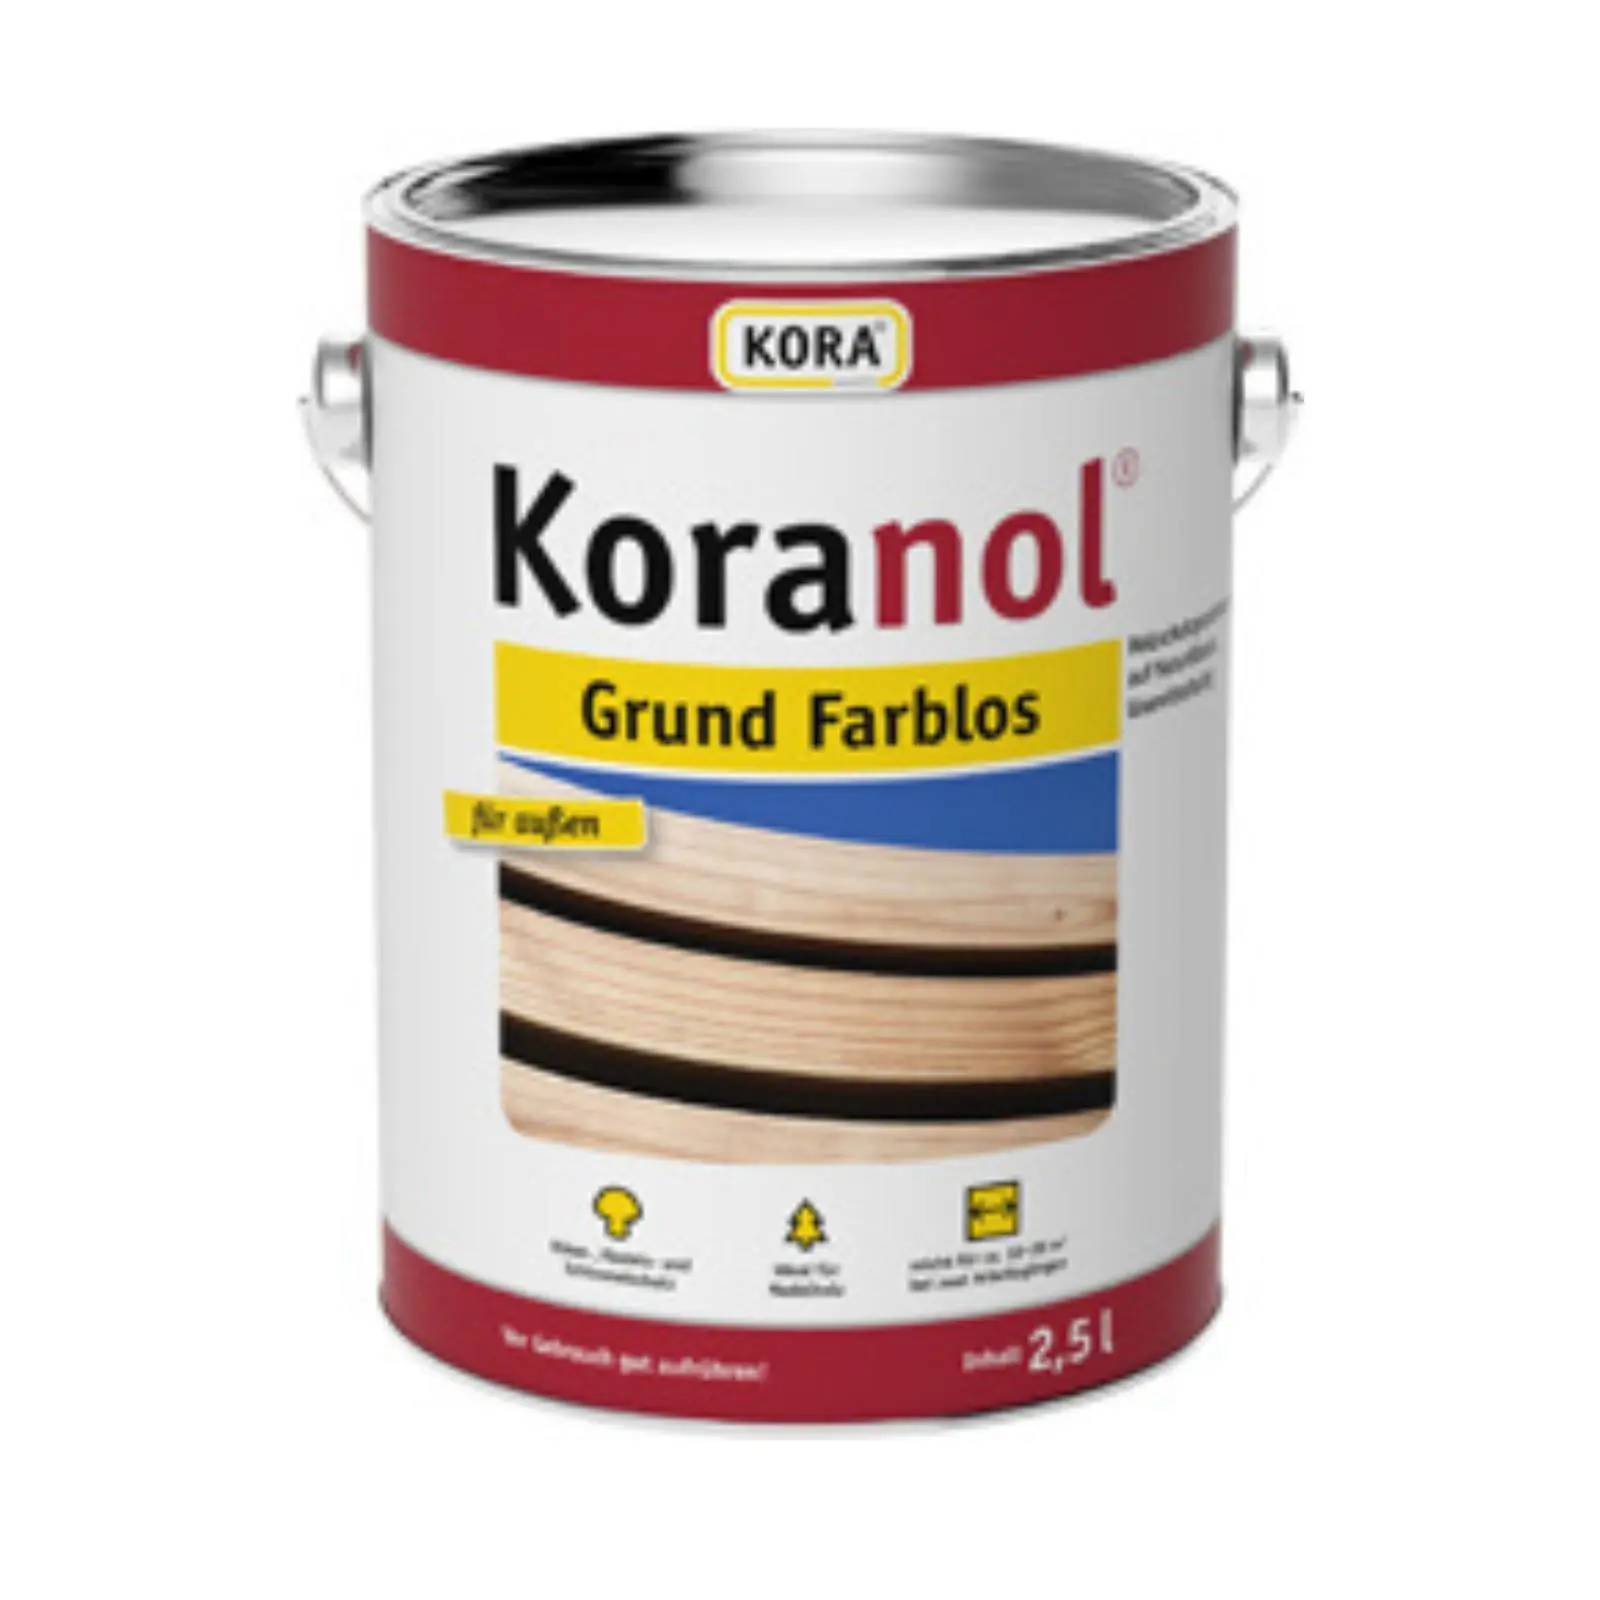 Koranol Grund farblos, 2,5 Liter